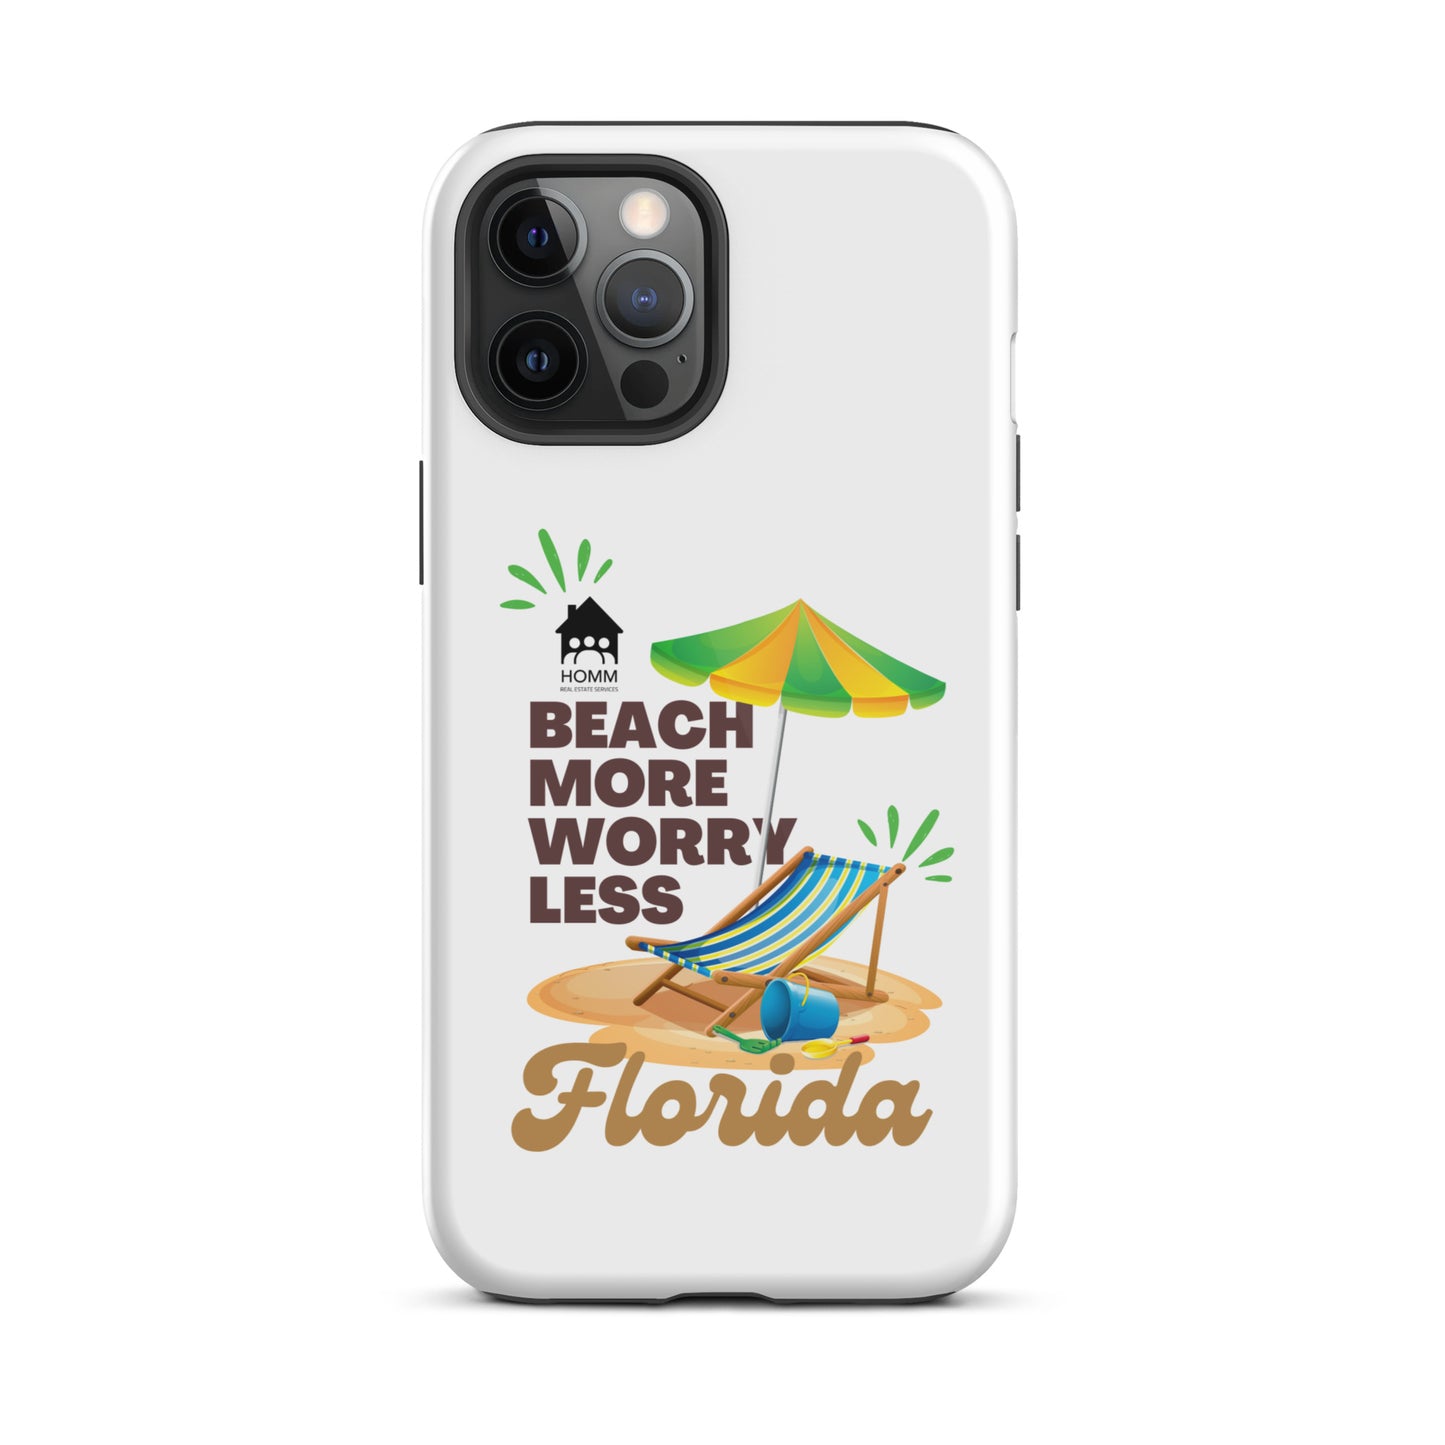 HOMM Beach More Tough iPhone case